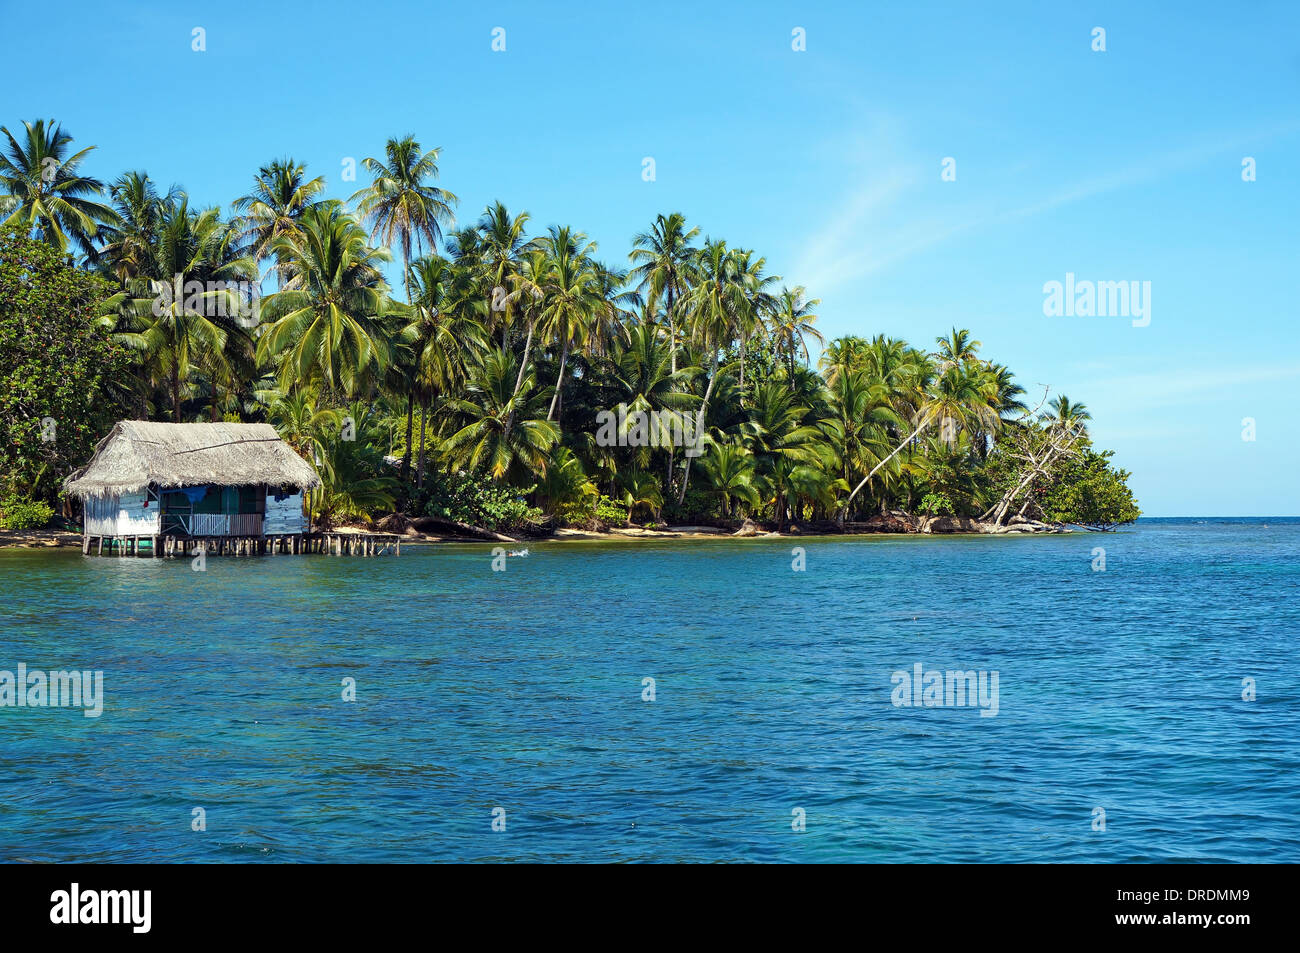 La Côte Tropical avec une cabane rustique sur pilotis sur l'eau, l'île de Bastimentos, Bocas del Toro, PANAMA, mer des Caraïbes Banque D'Images